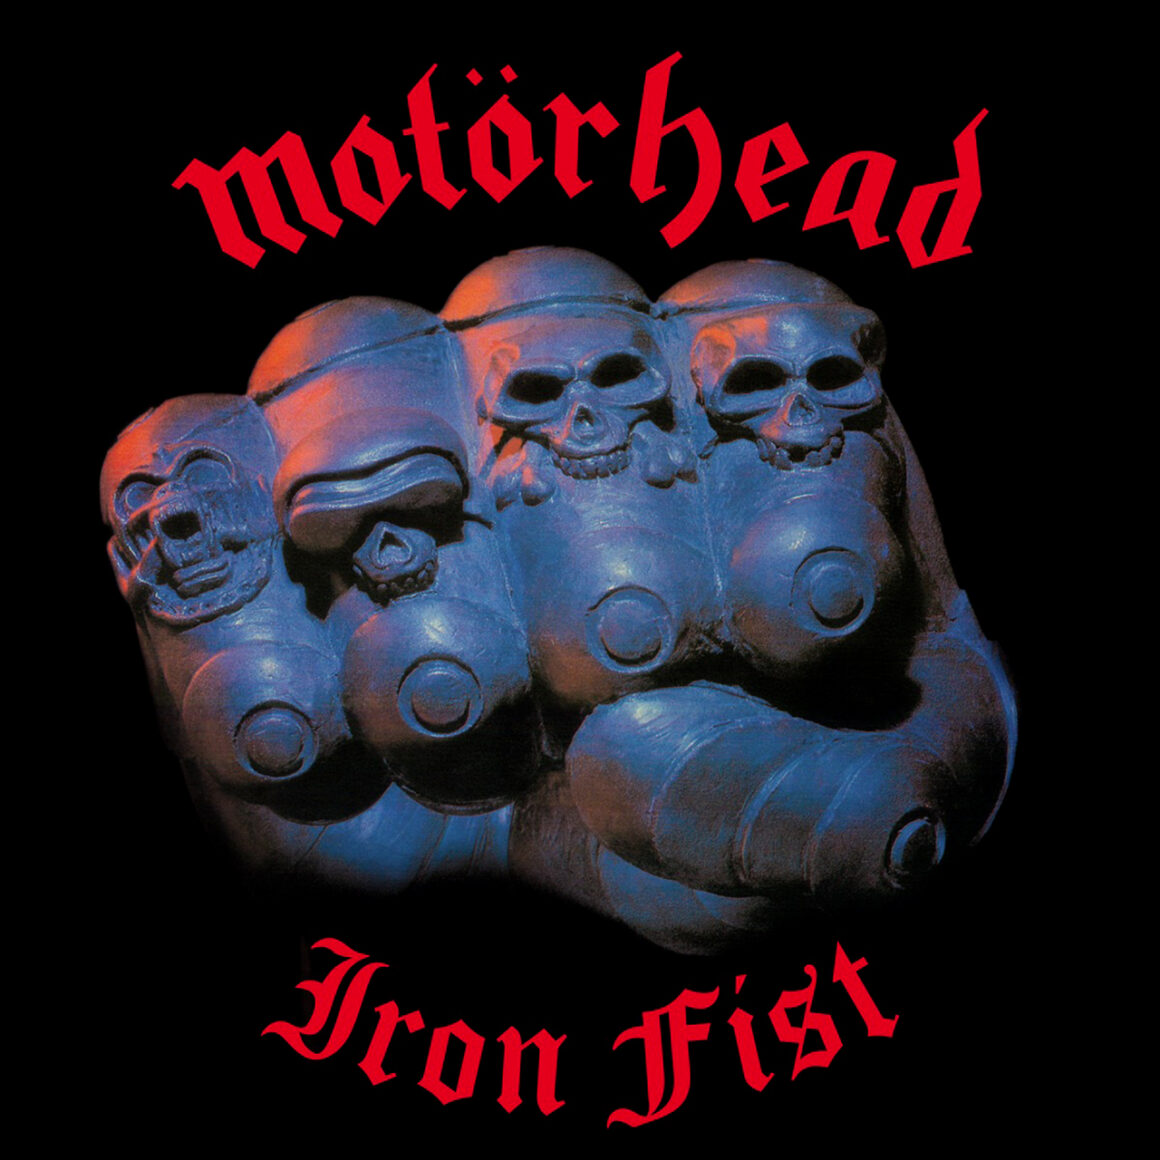 Motorhead, Iron Fist 